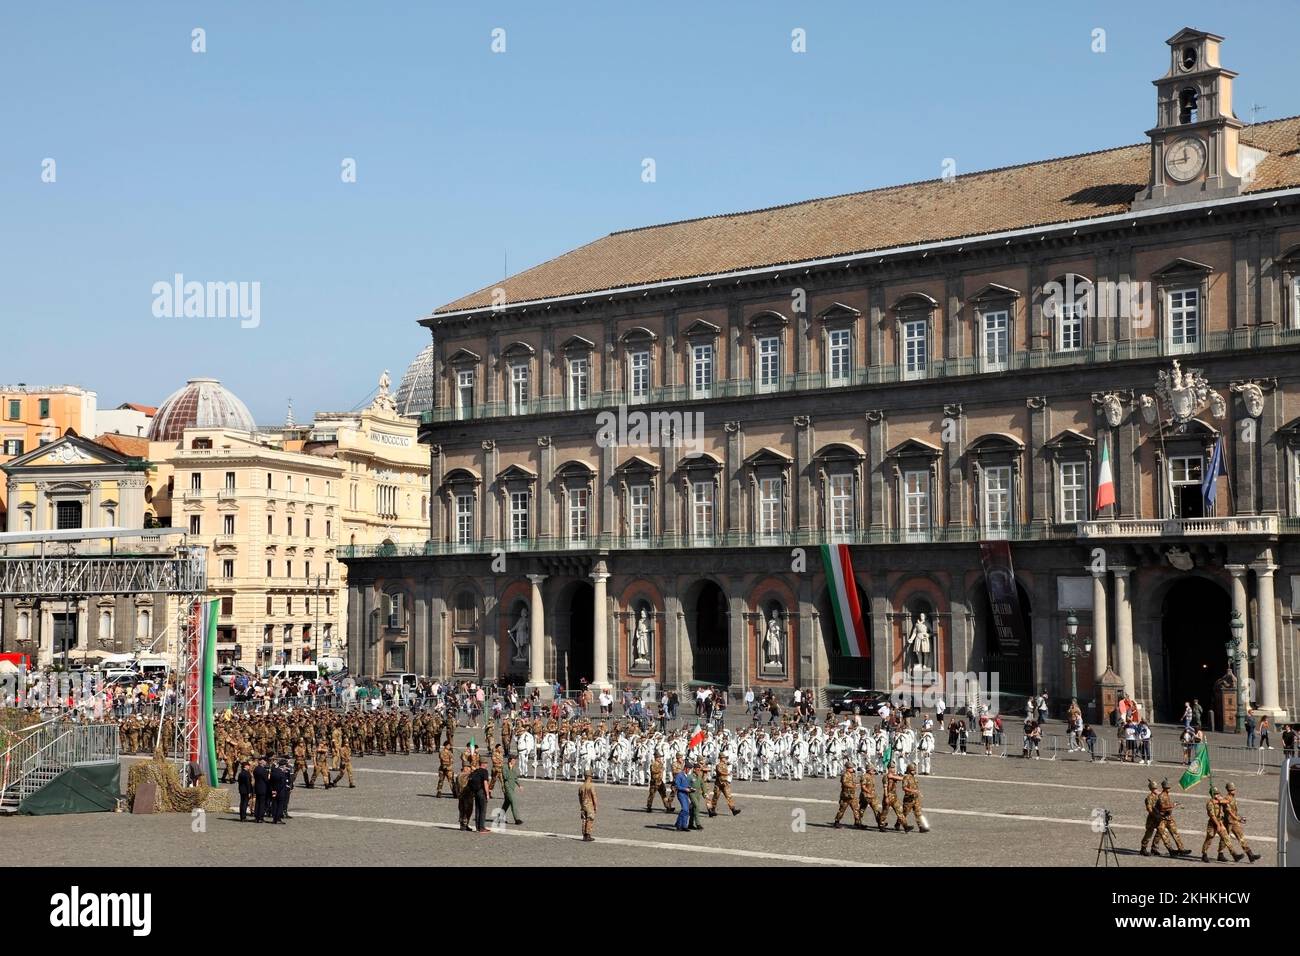 Mitglieder des italienischen Alpenkorps Proben ihre 150.-Jubiläumsparade vor dem Königspalast, Piazza del Plebiscito, Neapel, Italien. Stockfoto